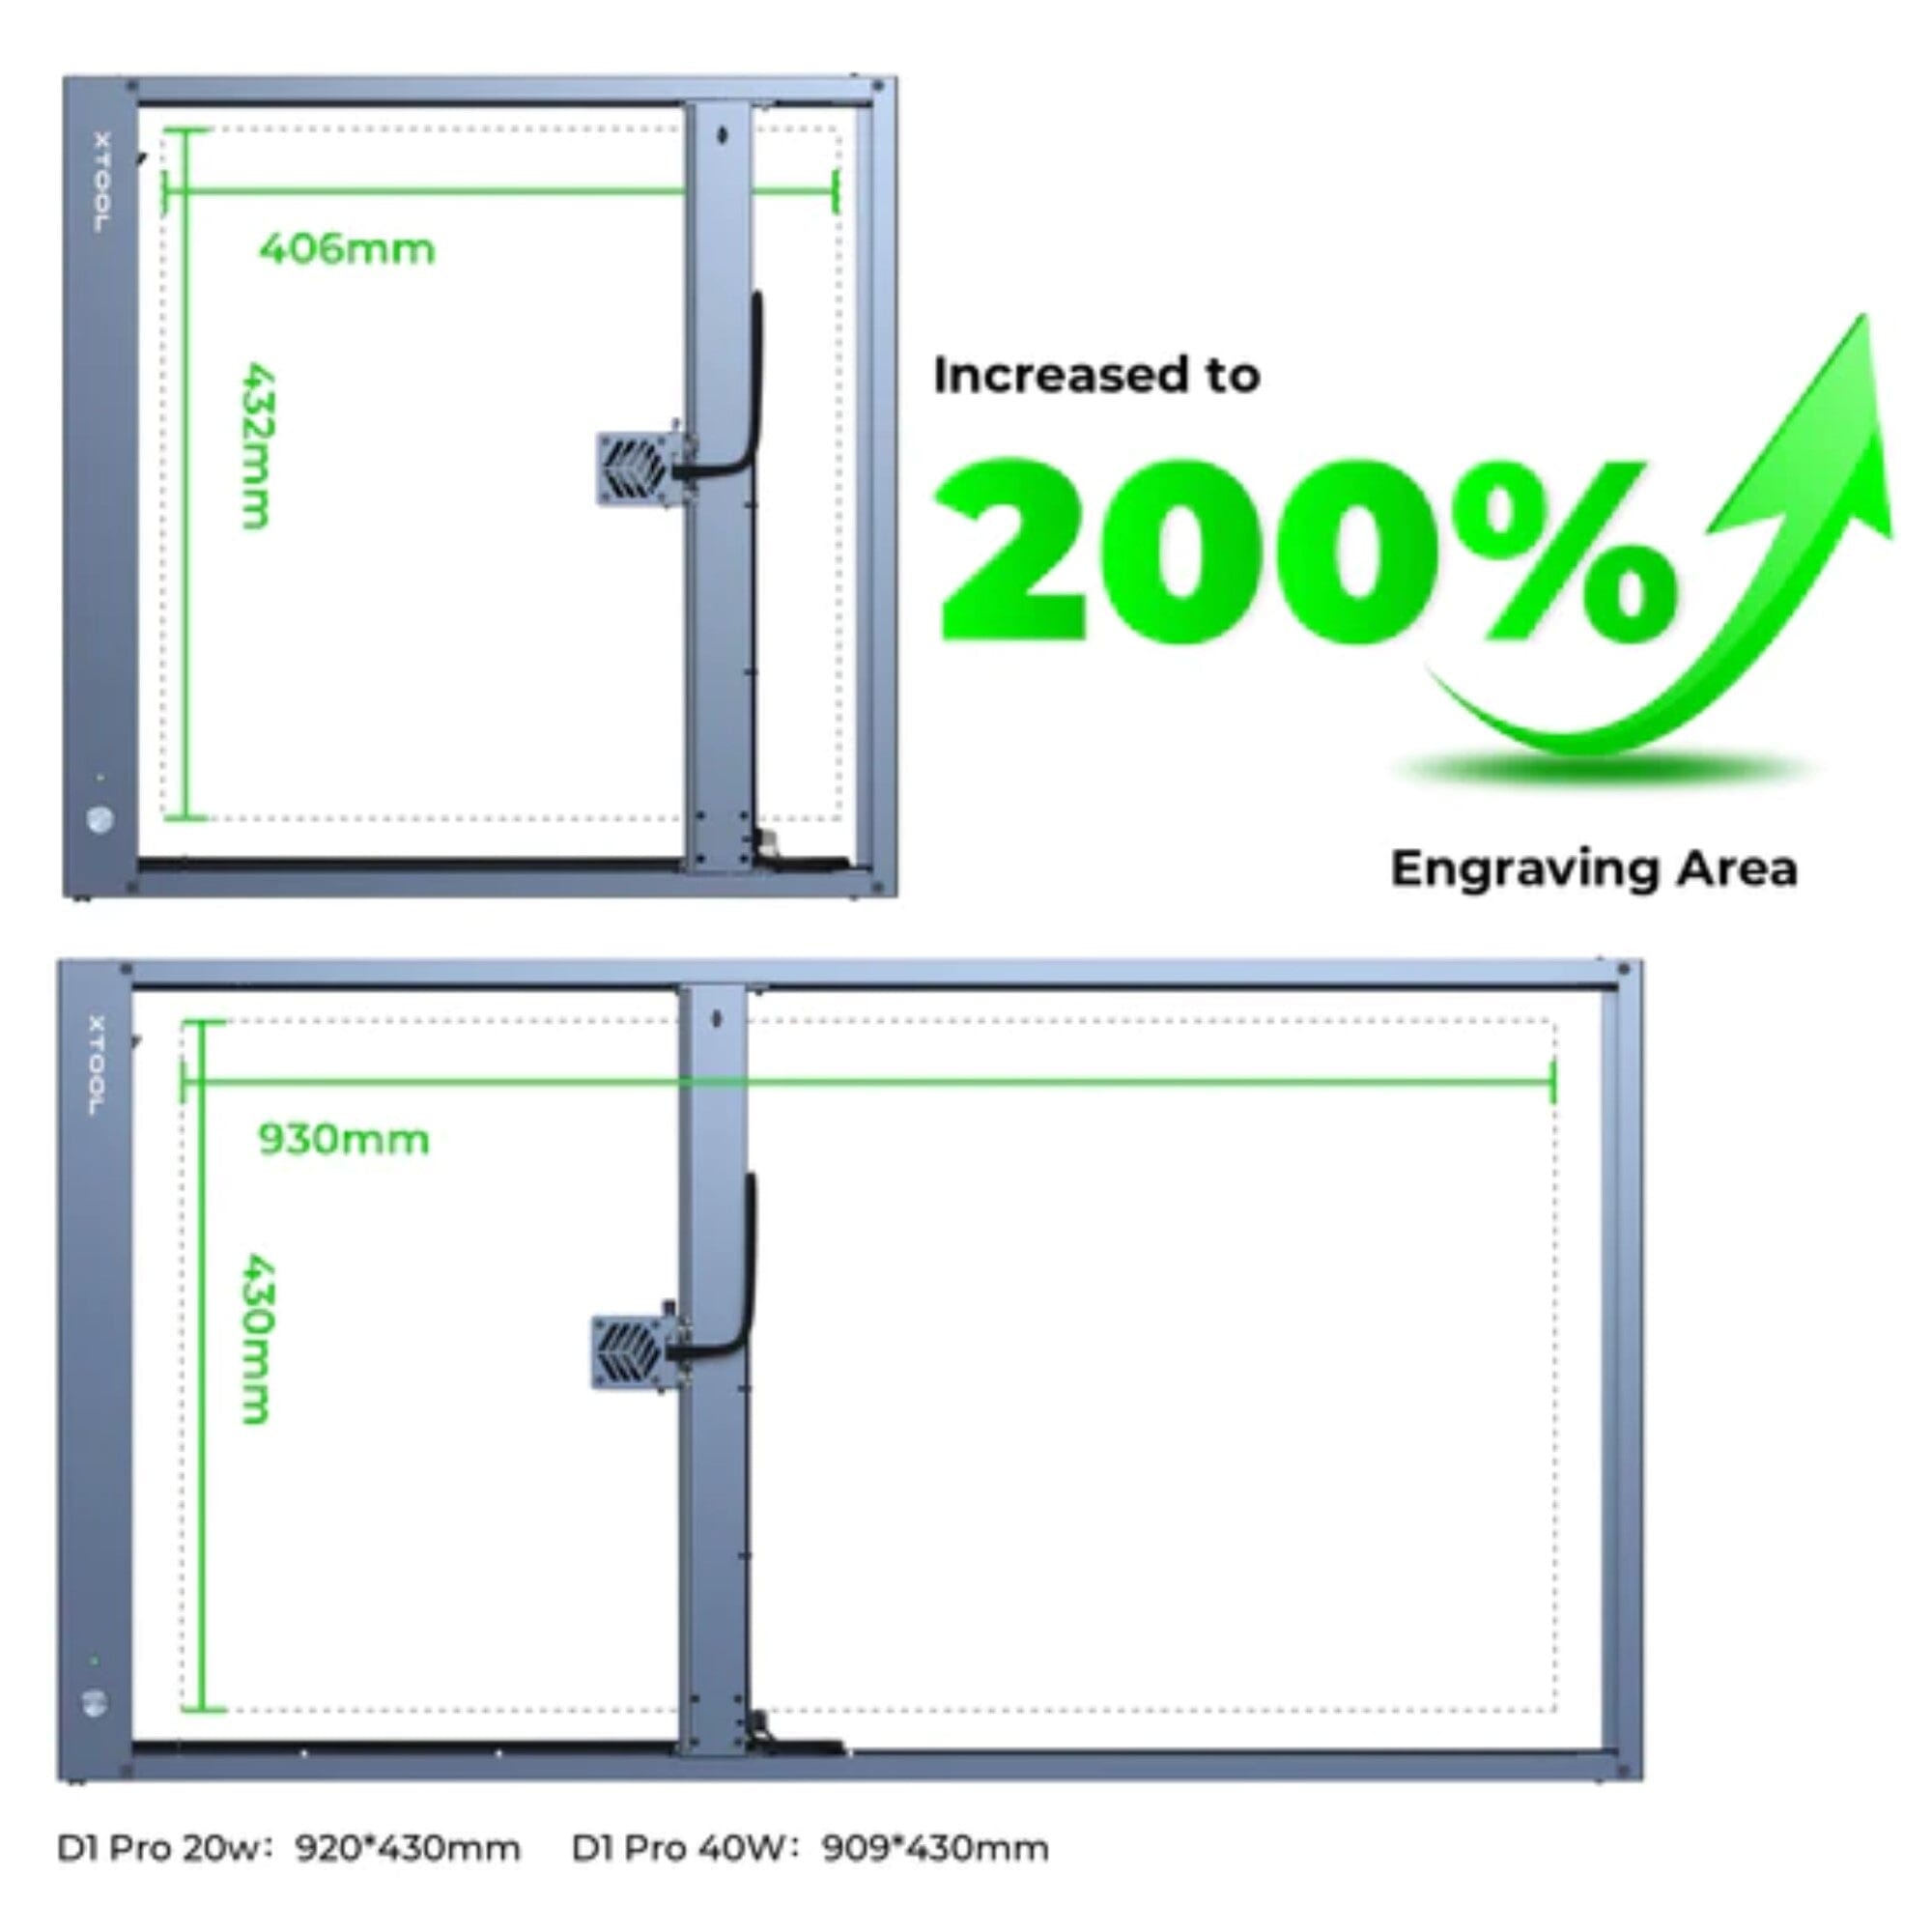 xTool Laser Screen Printing Kit - Single Frame Bundle